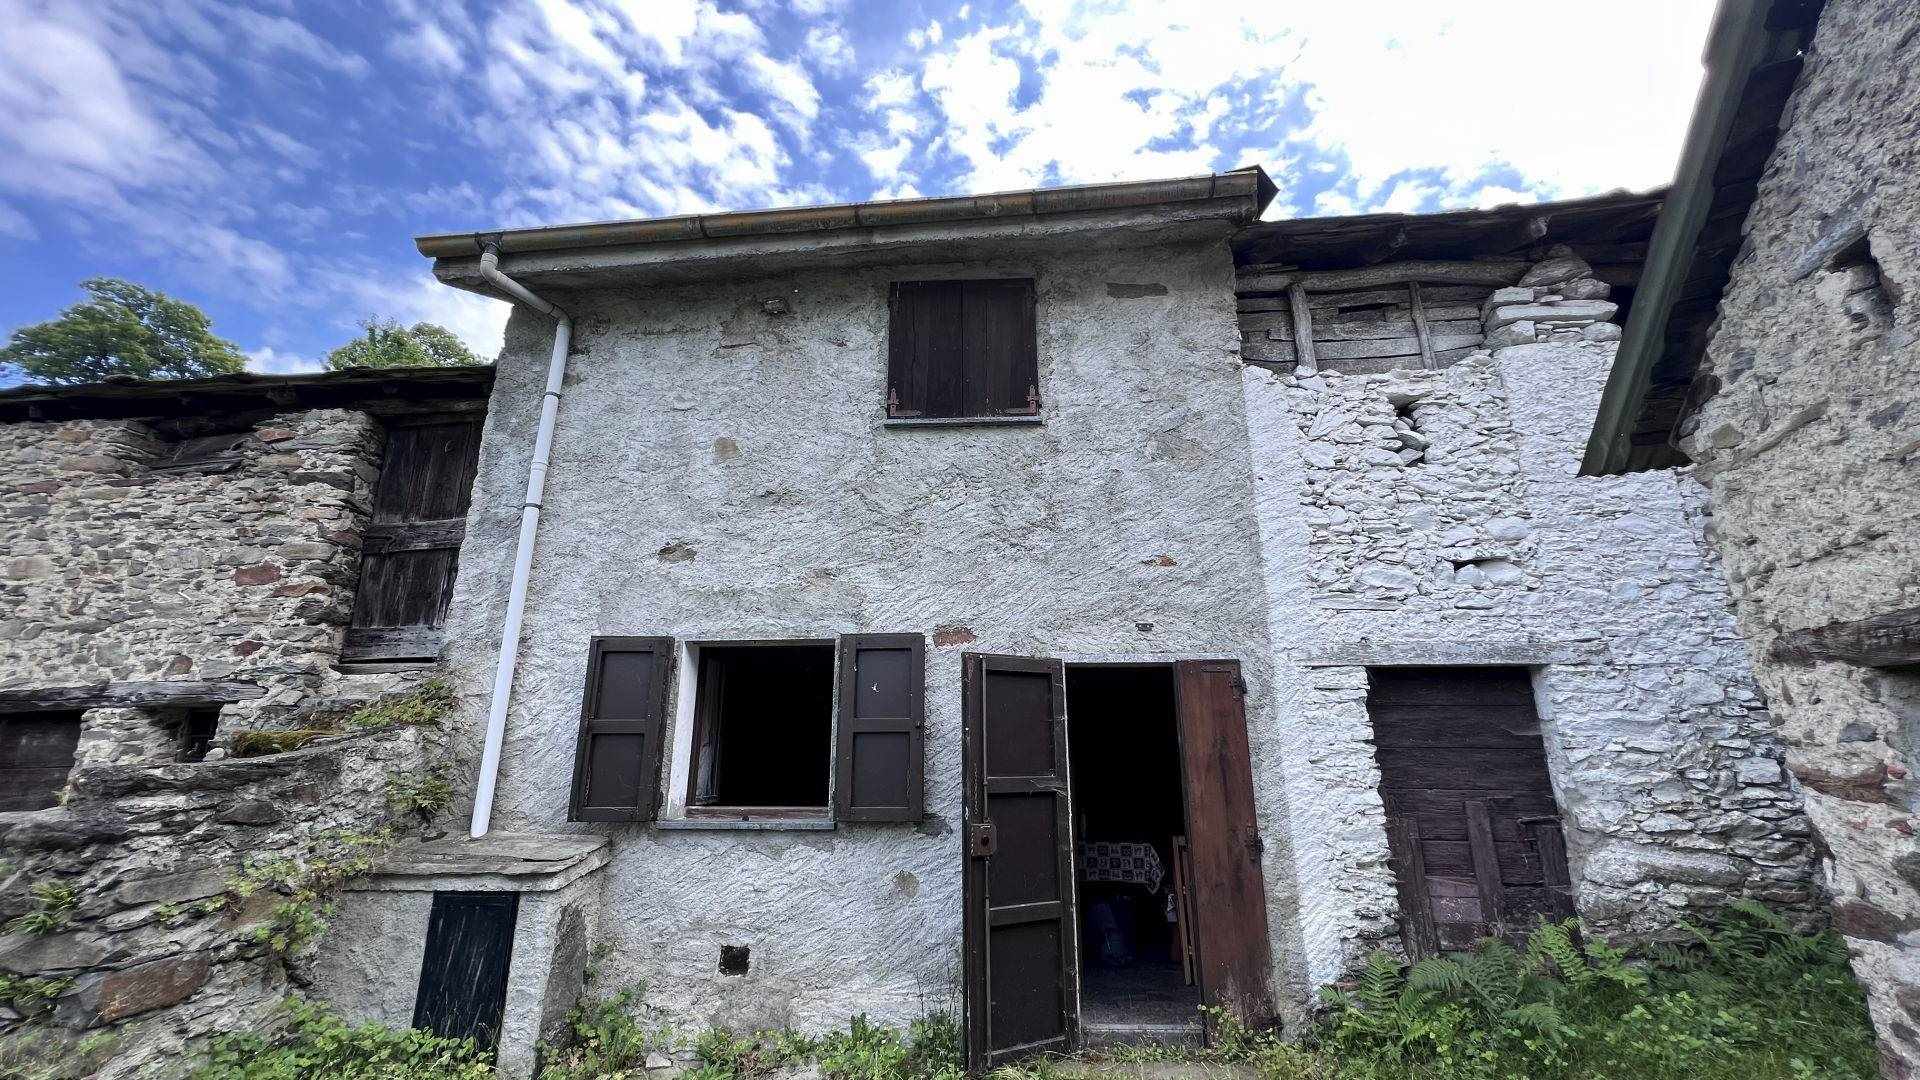 Rustico / Casale in vendita a Morbegno, 3 locali, zona Zona: Arzo, prezzo € 25.000 | CambioCasa.it